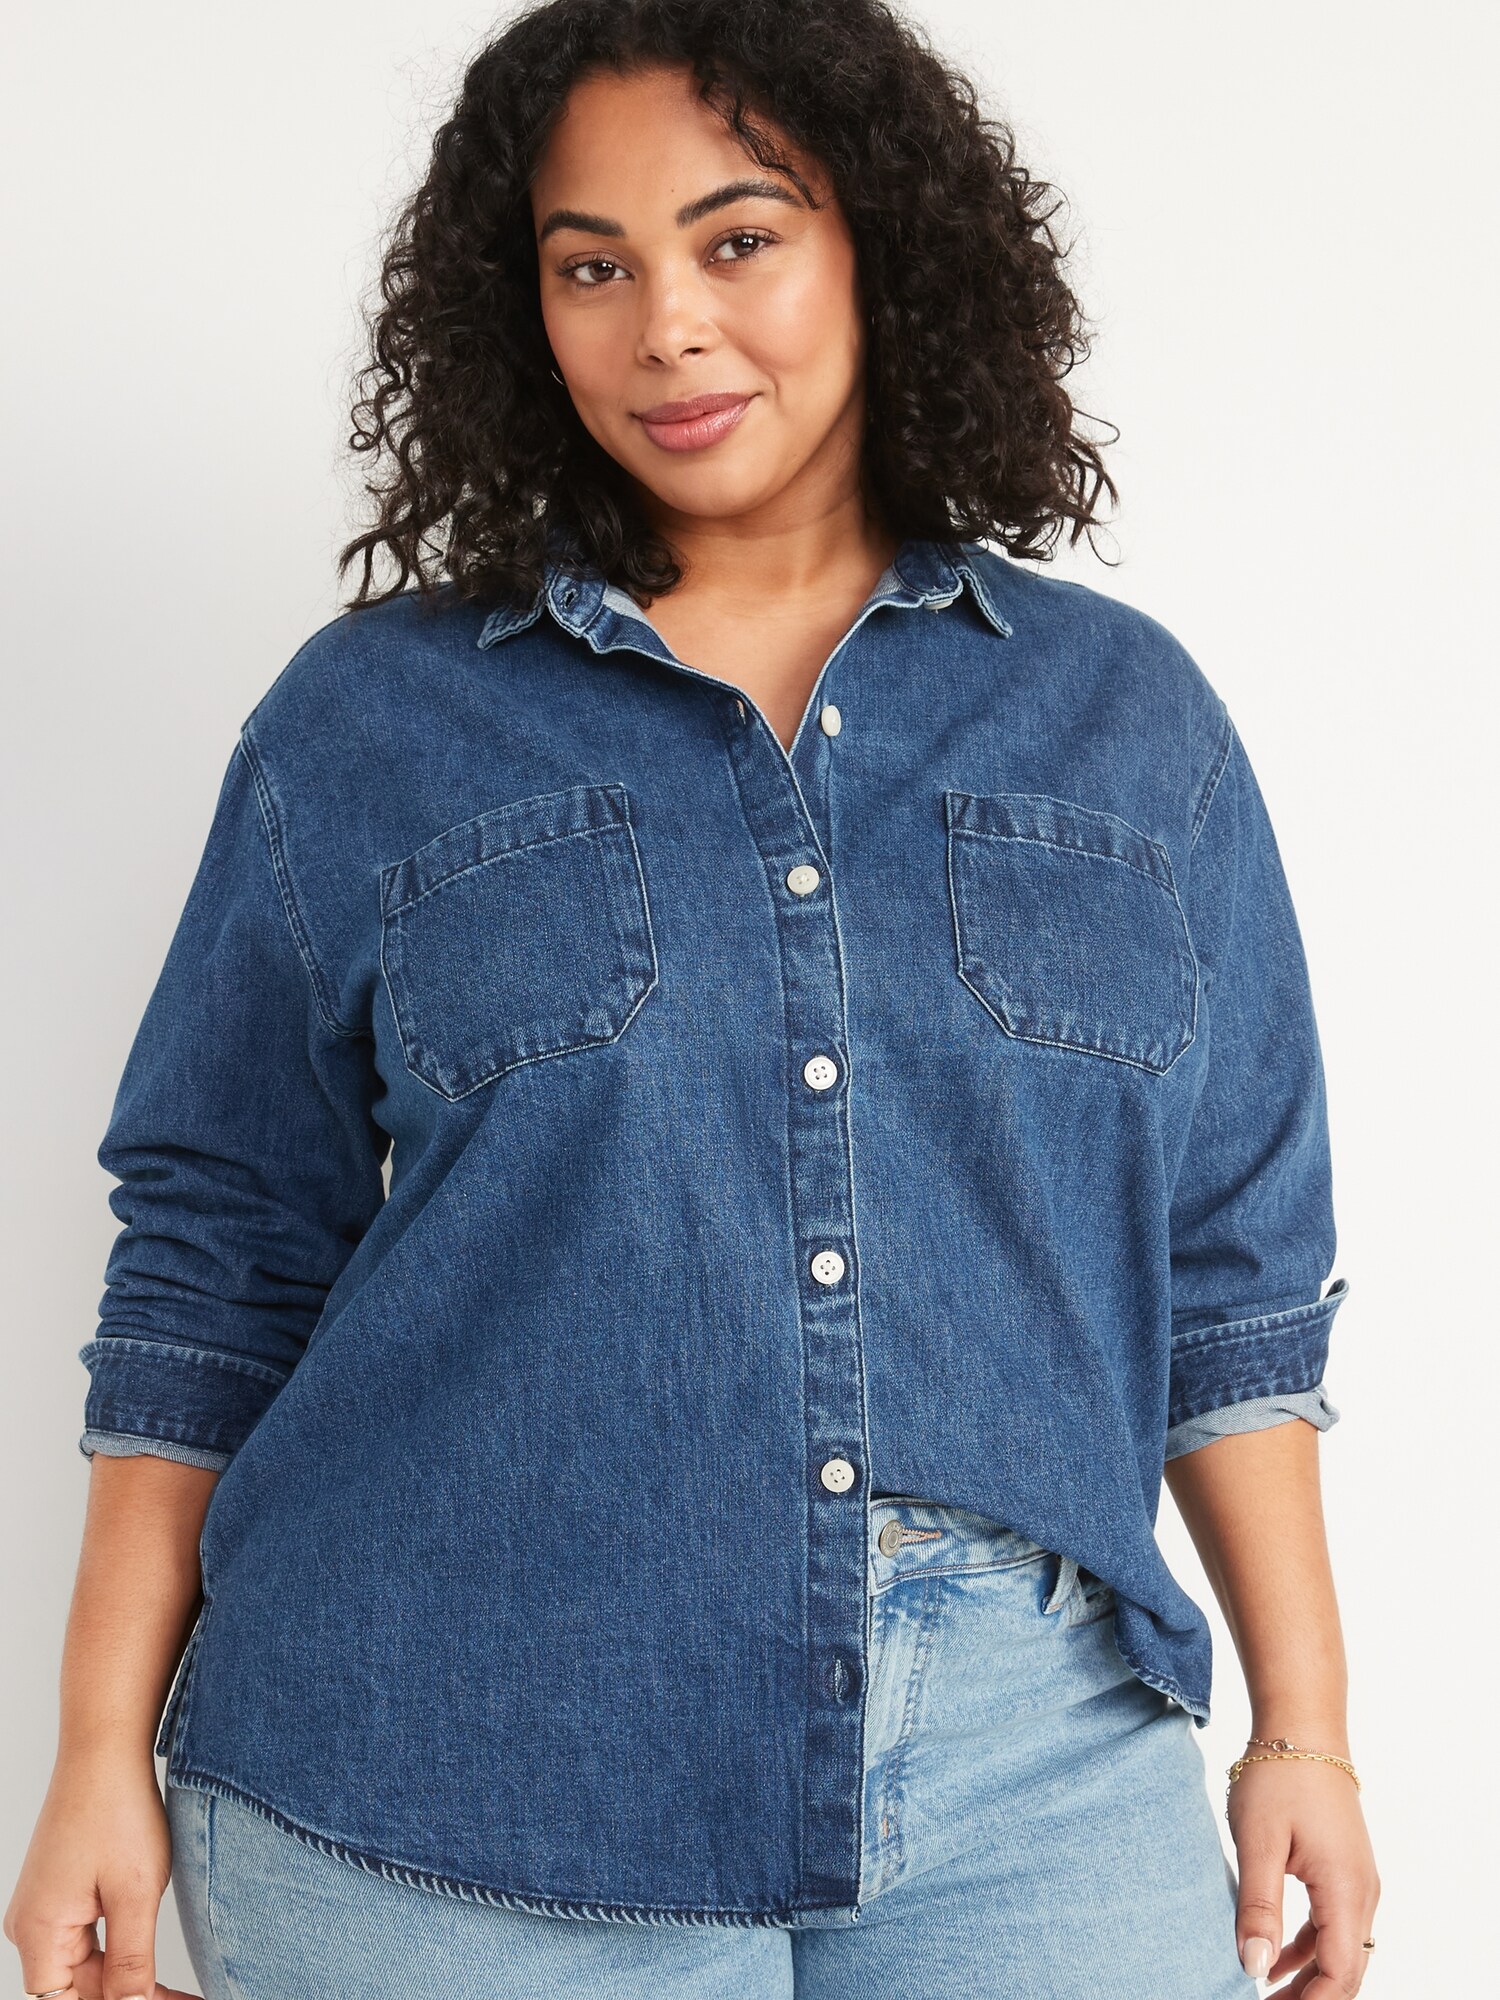 Oversized Boyfriend Medium-Wash Jean Shirt for Women | Old Navy